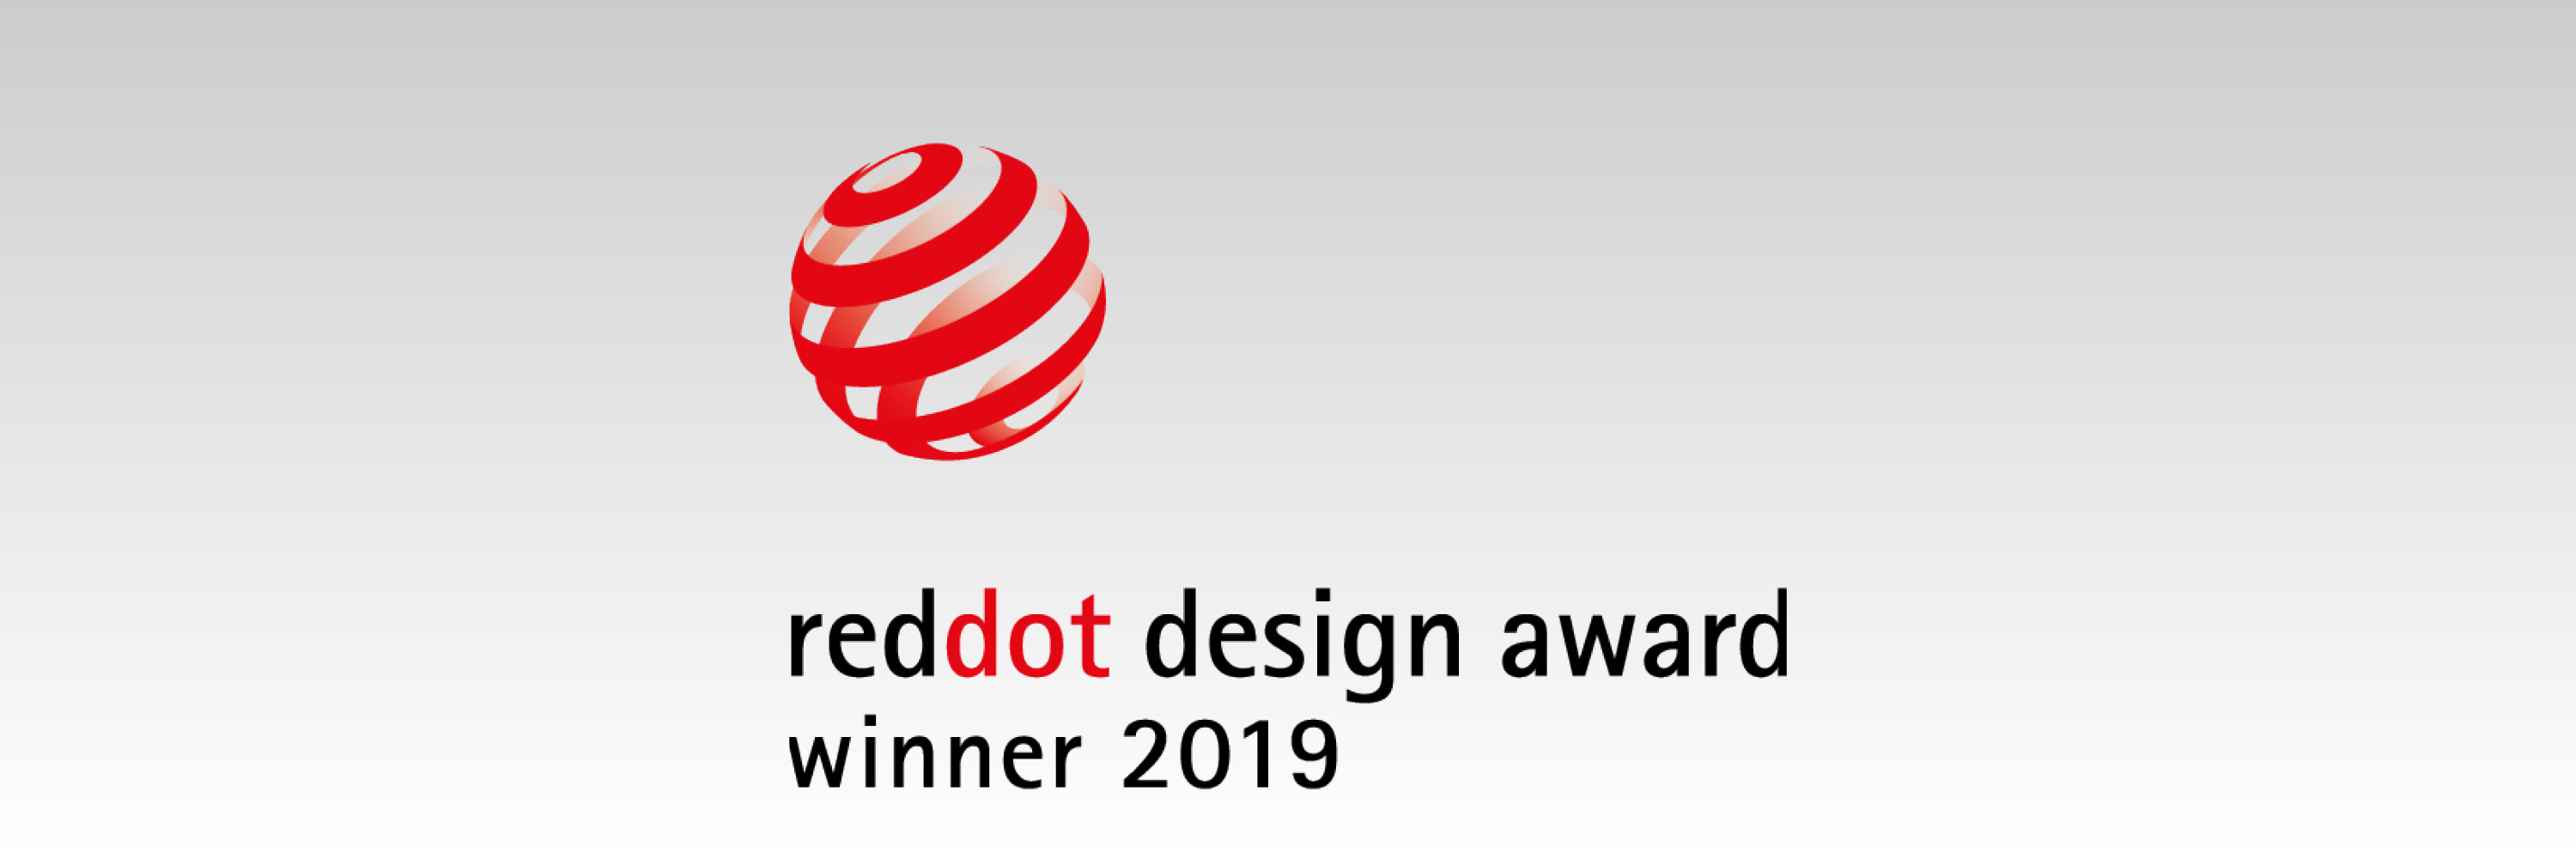 Ippiart Studio won Red Dot Design Award 2019!